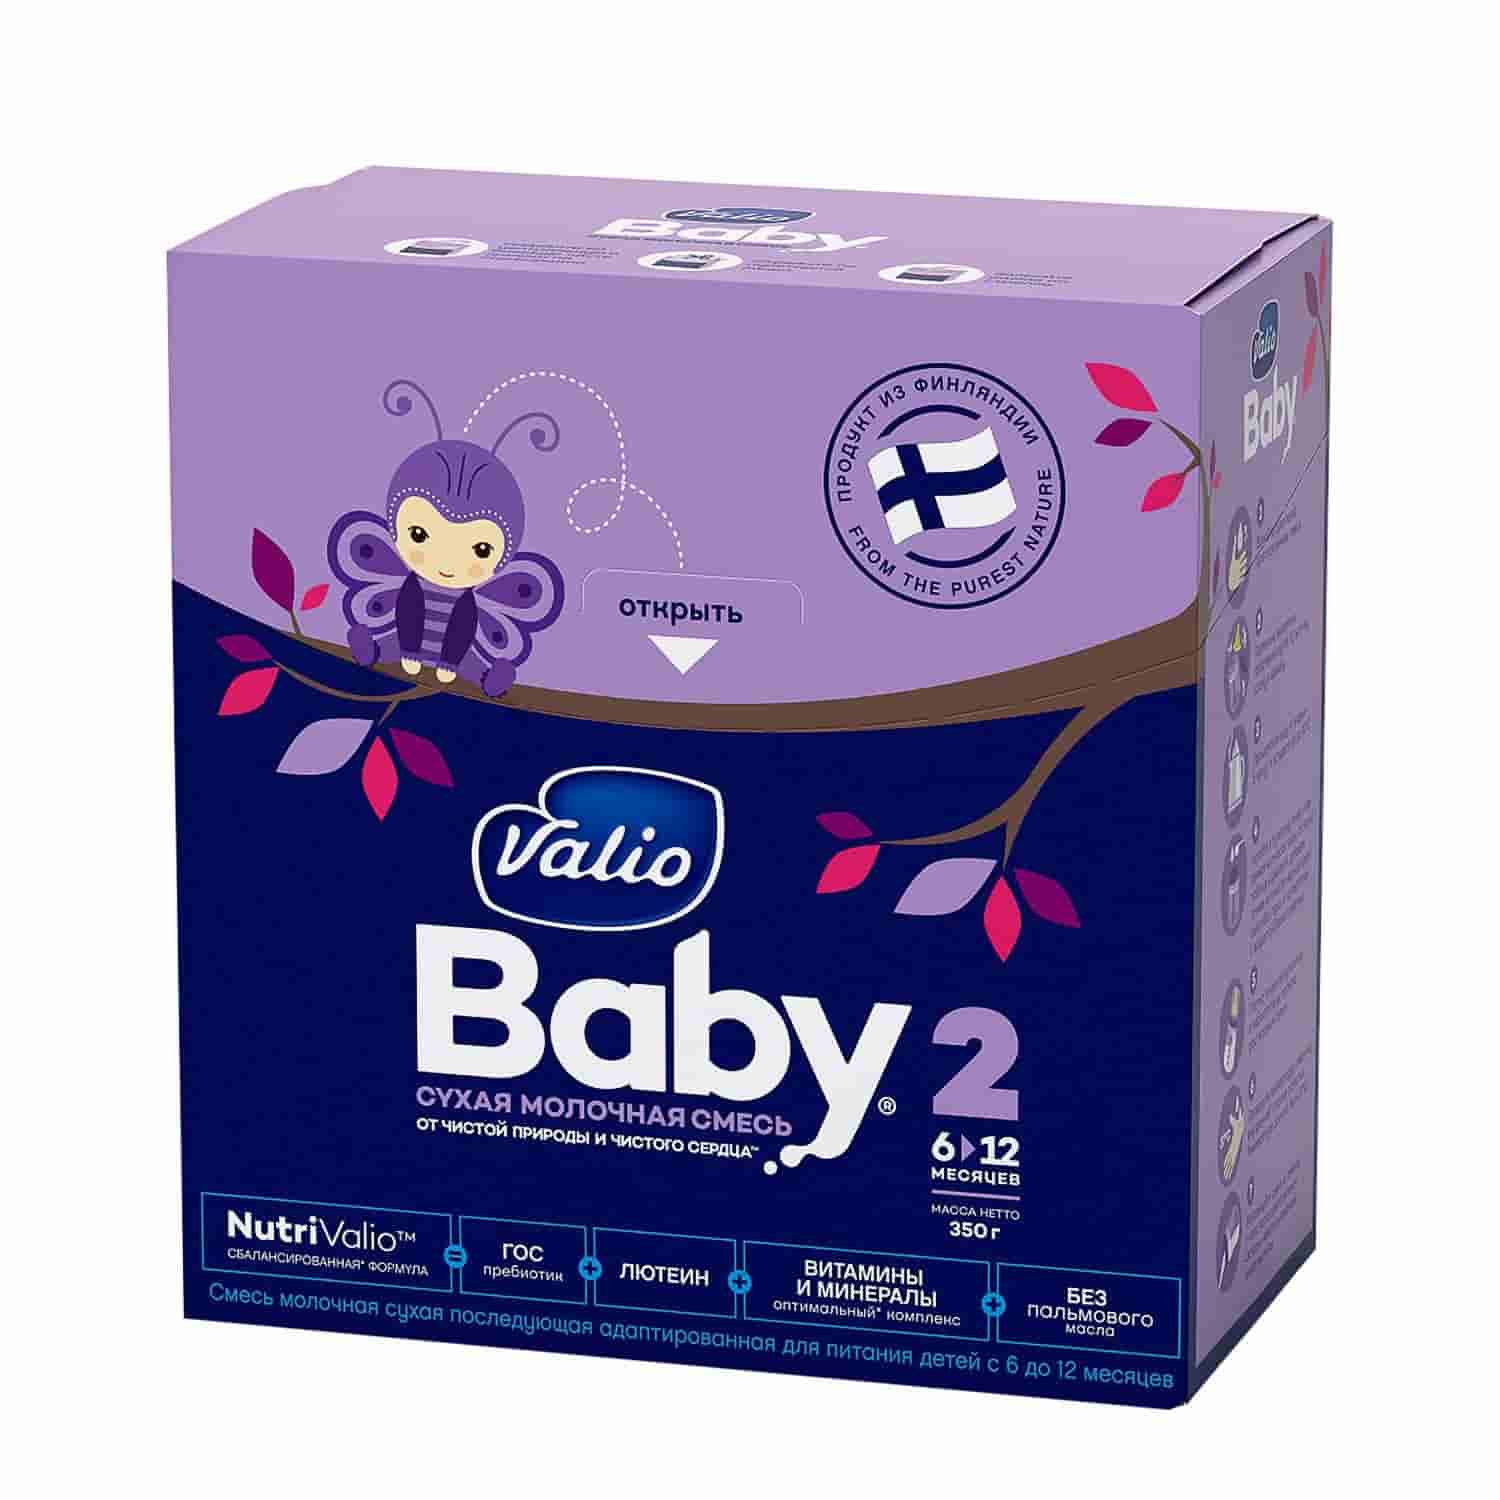 Valio Baby 2 NutriValio - cмесь молочная cухая последующая, адаптированная для питания детей с 6 до 12 месяцев